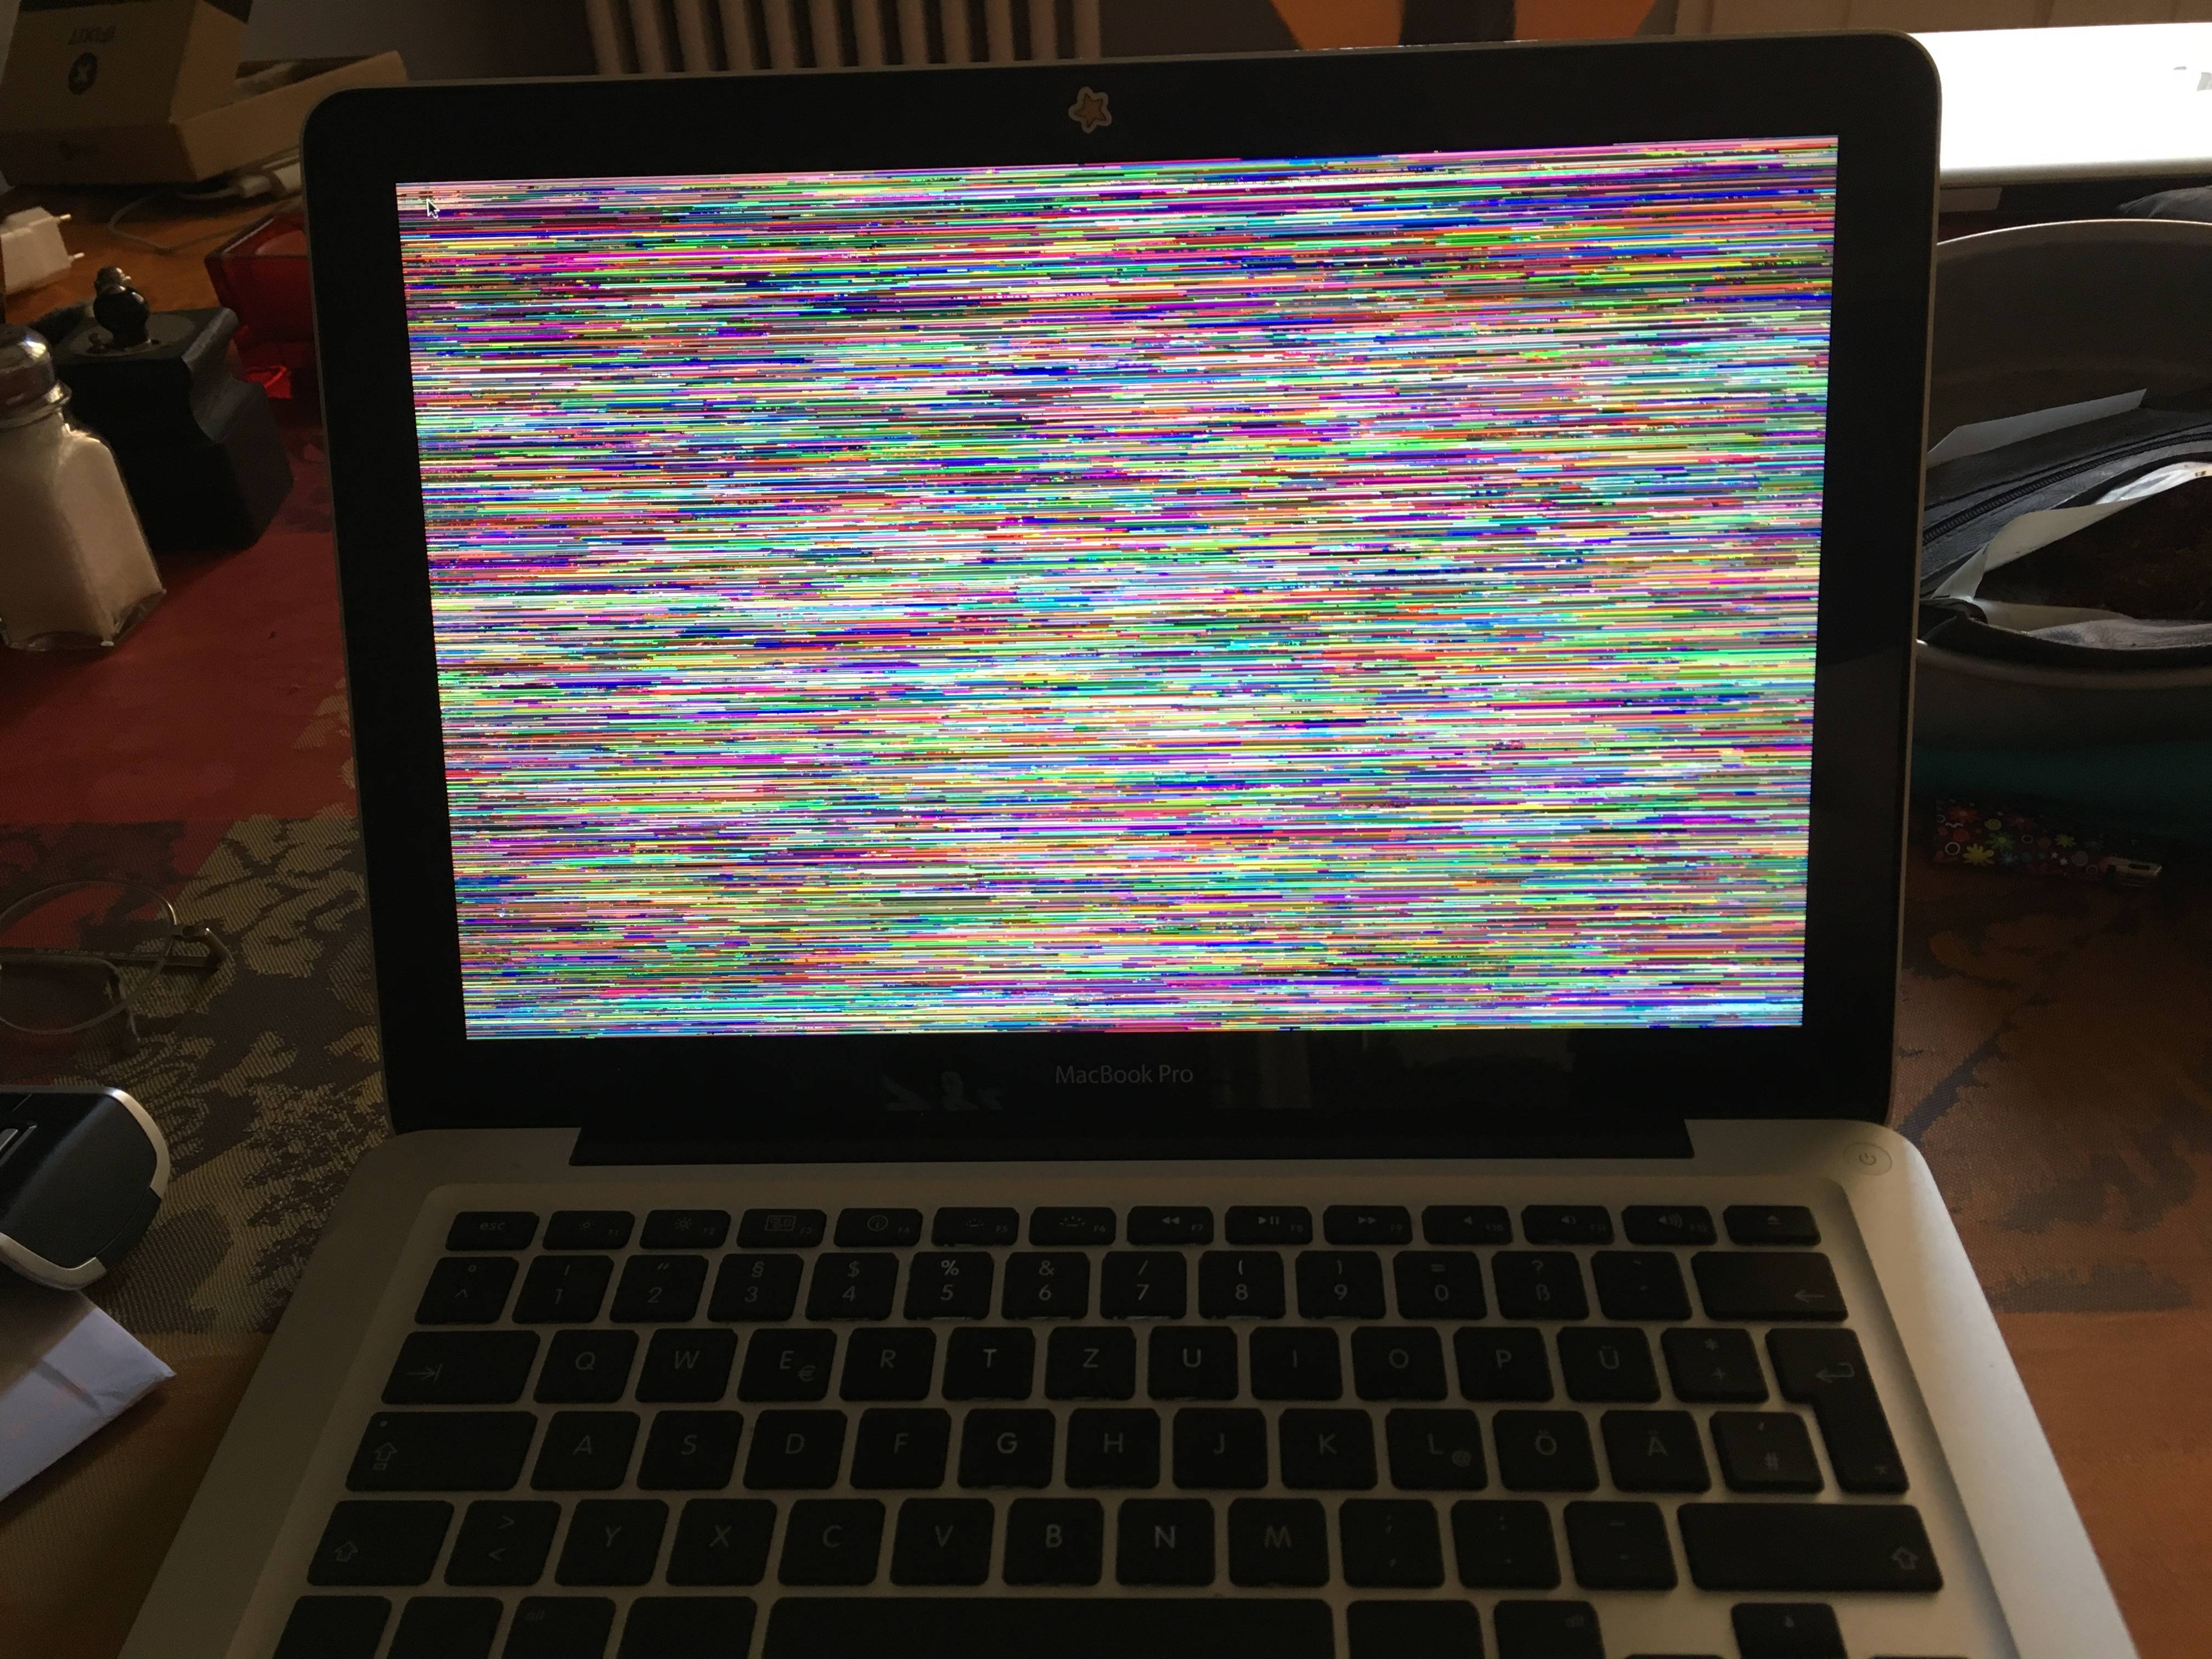 Ноутбук моргает. что делать, если мигает экран ноутбука